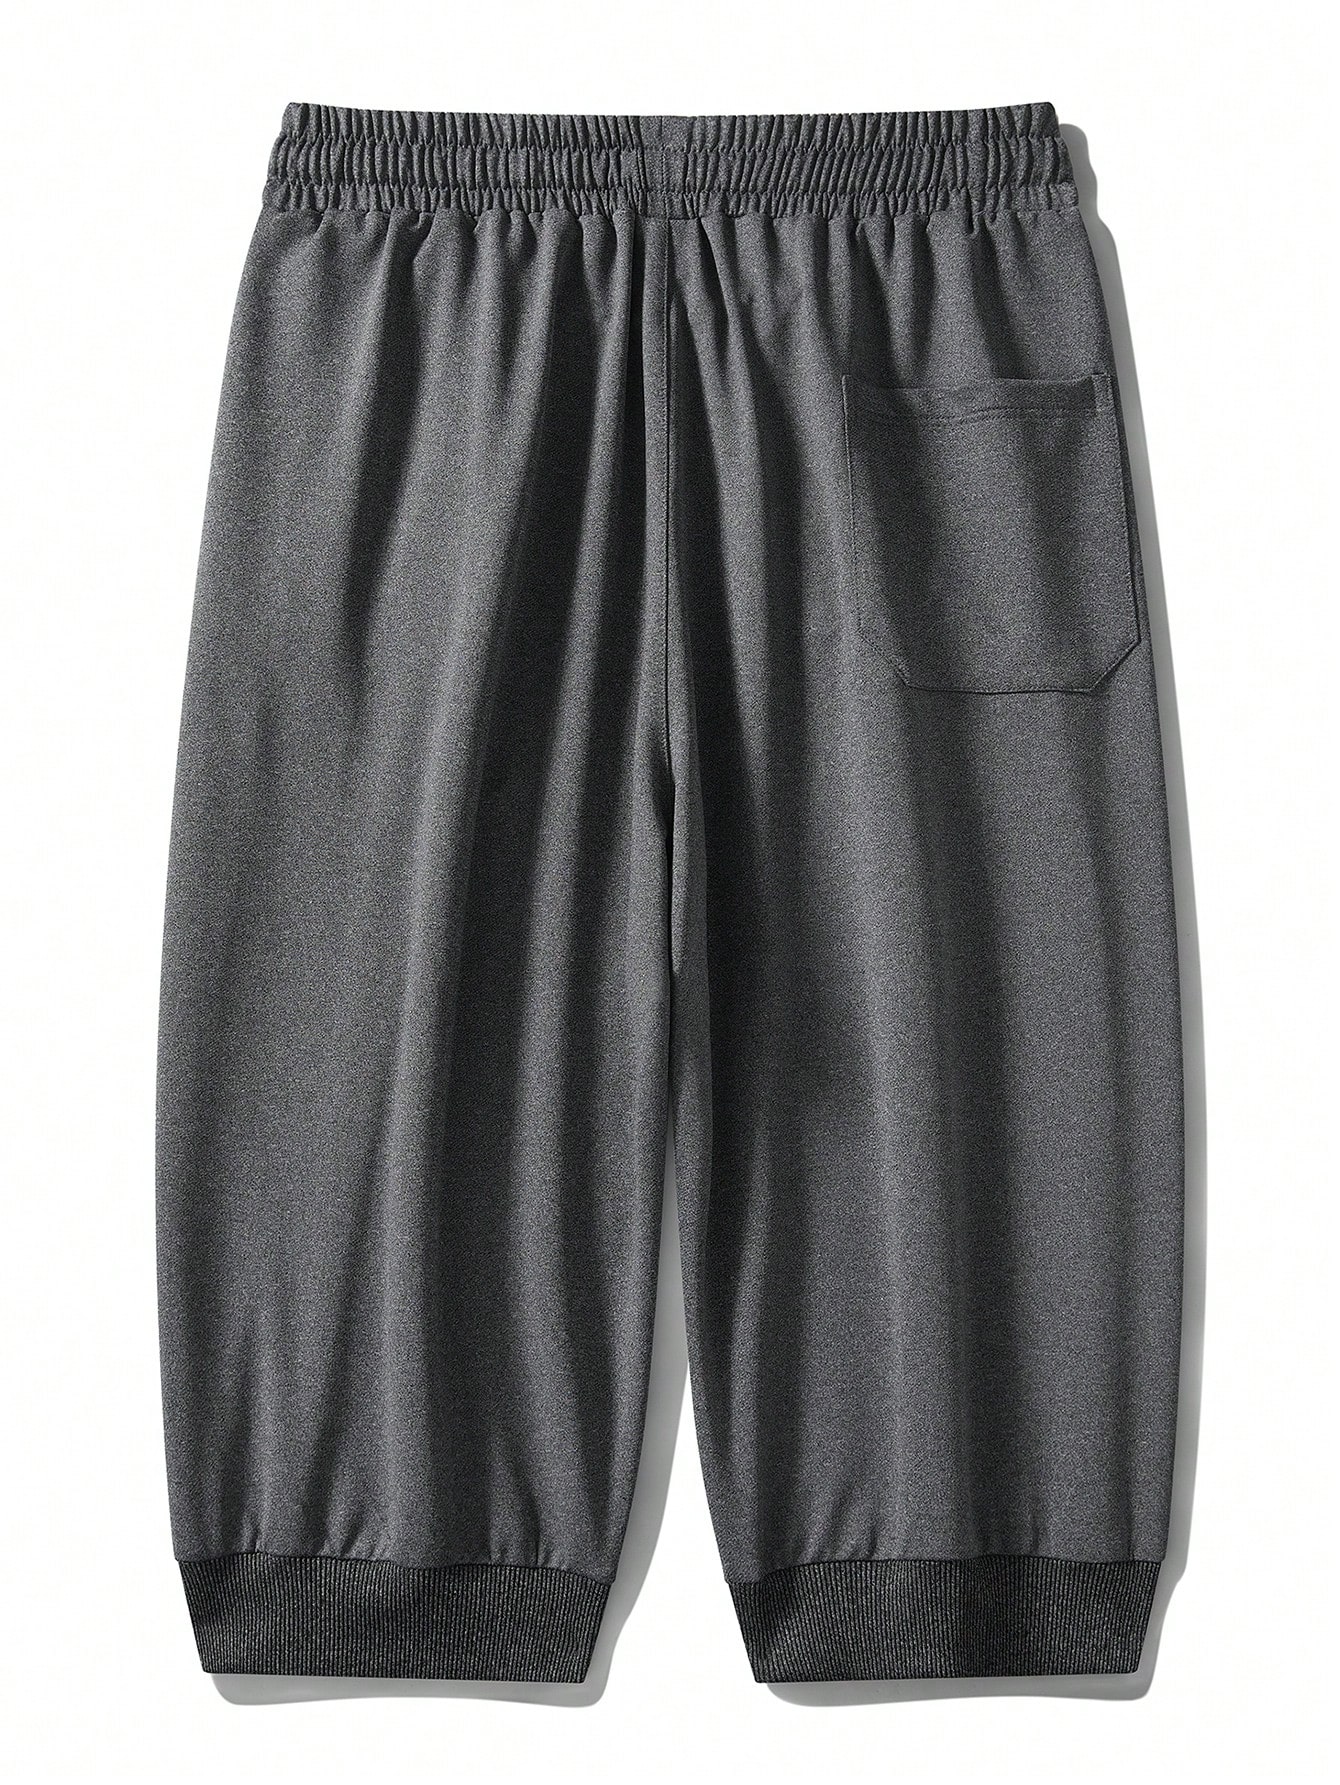 Мужские шорты свободного кроя больших размеров длиной 7/8 на лето, темно-серый штаны кухонные мужские водостойкие с эластичной талией дышащие тонкие летние